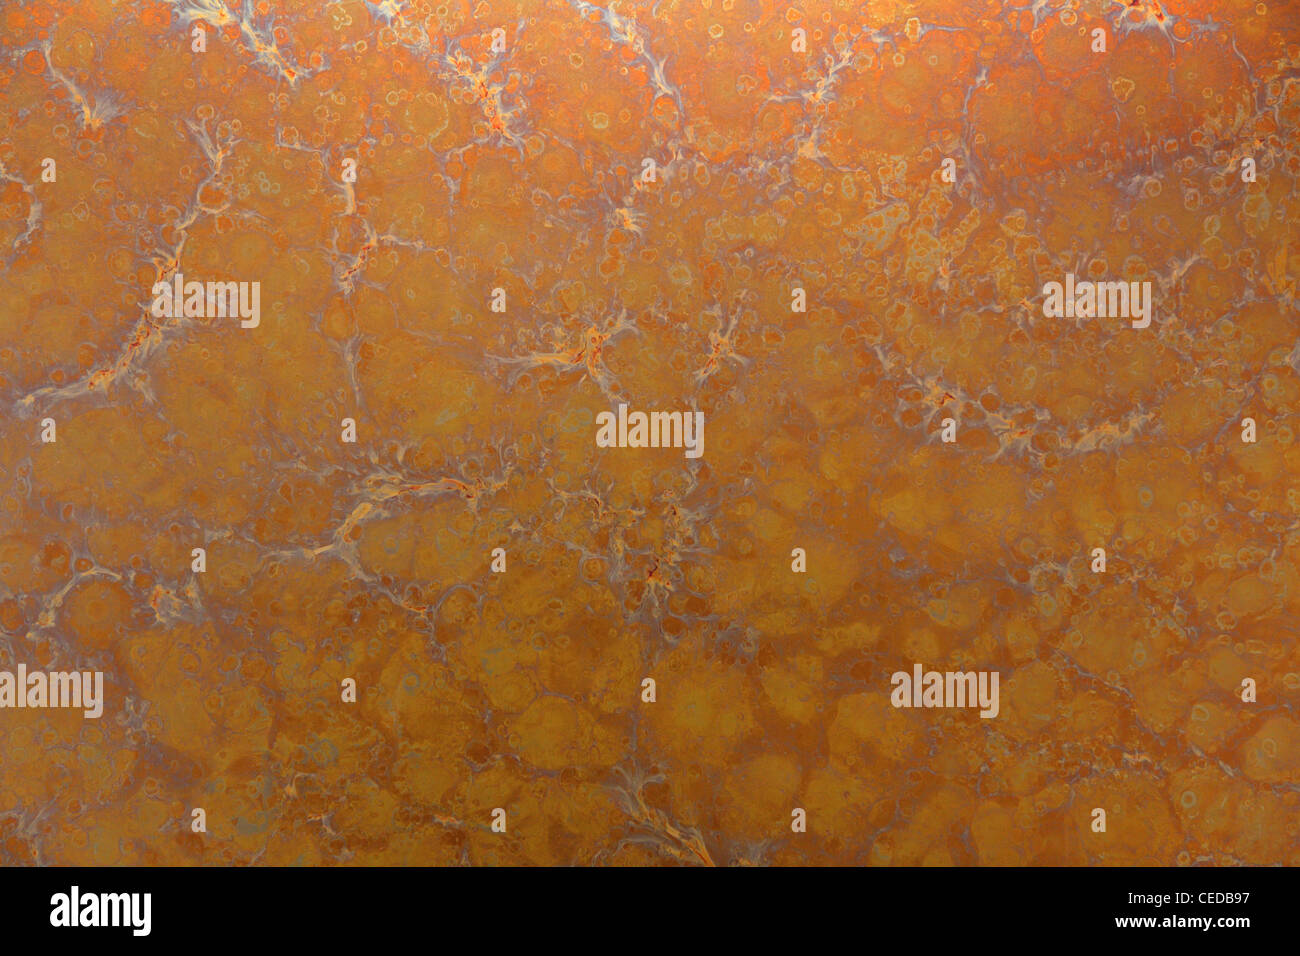 abstrakt orange metal texture Stock Photo